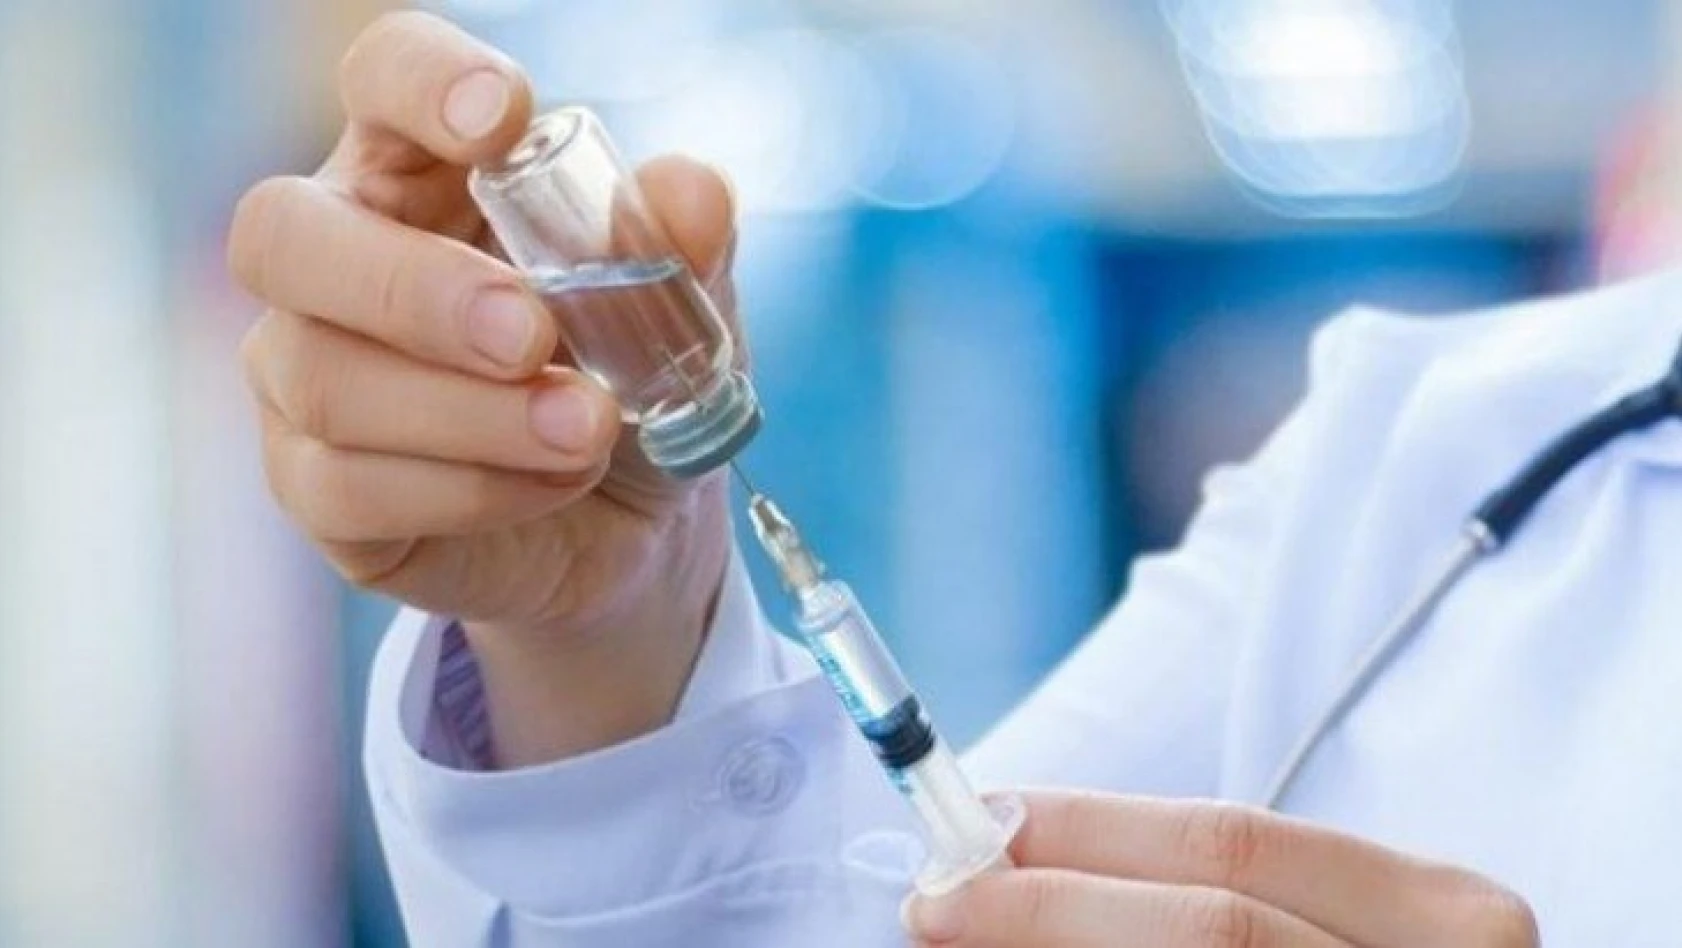 Türkiye'de koronavirüs aşısının yapılacağı tarih belli oldu